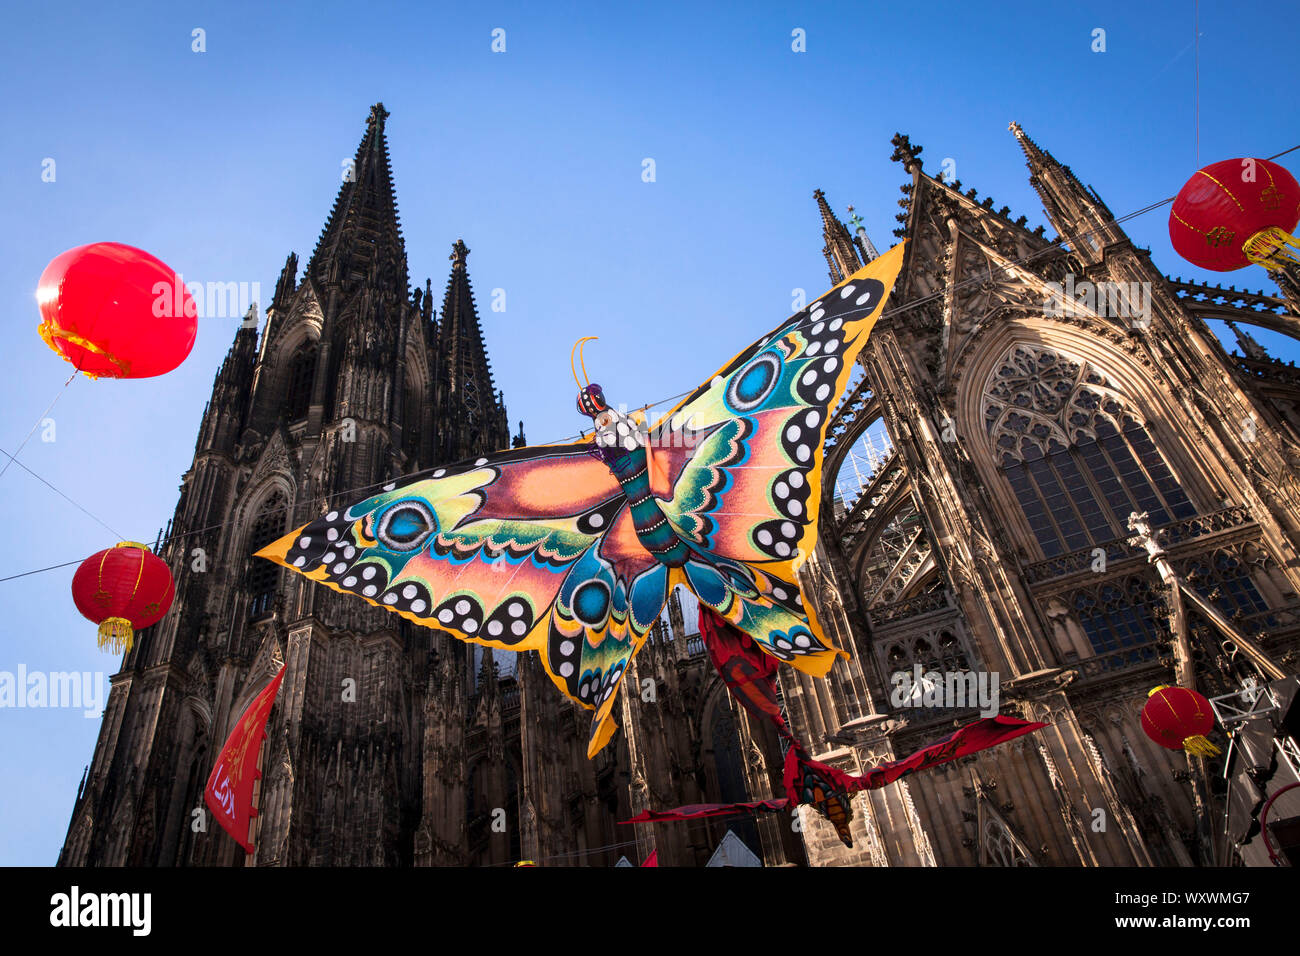 Festival de la Chine sur la place Roncalli à la cathédrale, papillon de décoration, Cologne, Allemagne. Auf dem Chinafest Roncalliplatz am Dom, Schmetterling Banque D'Images